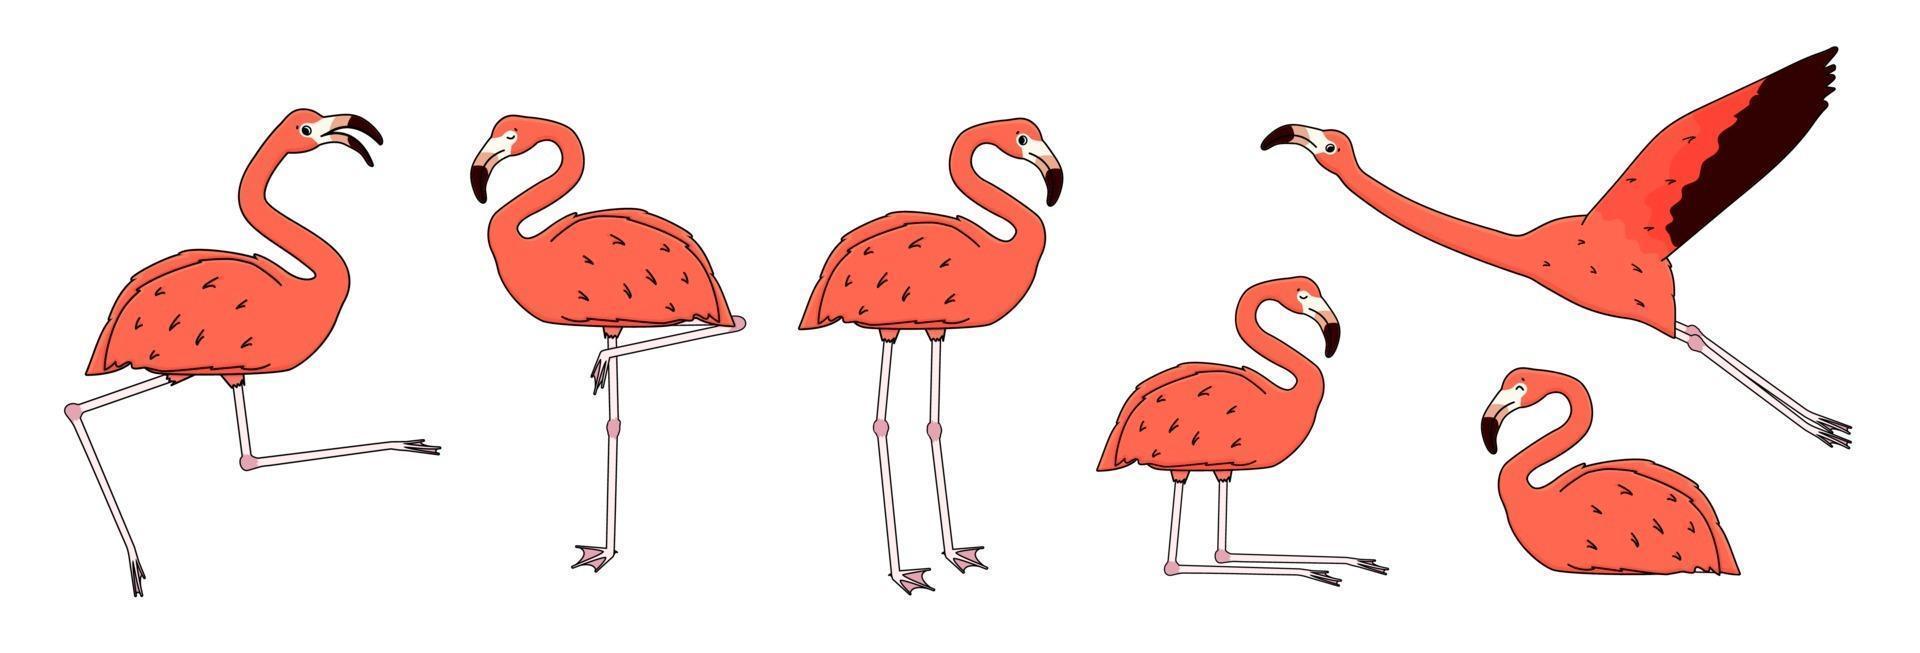 conjunto de flamencos de melocotón rosa de dibujos animados de contorno vectorial aislado sobre fondo blanco. El animal del doodle está activo, baila, vuela, se regocija, duerme, descansa, se relaja, sueña, camina. ilustración de diferentes poses vector